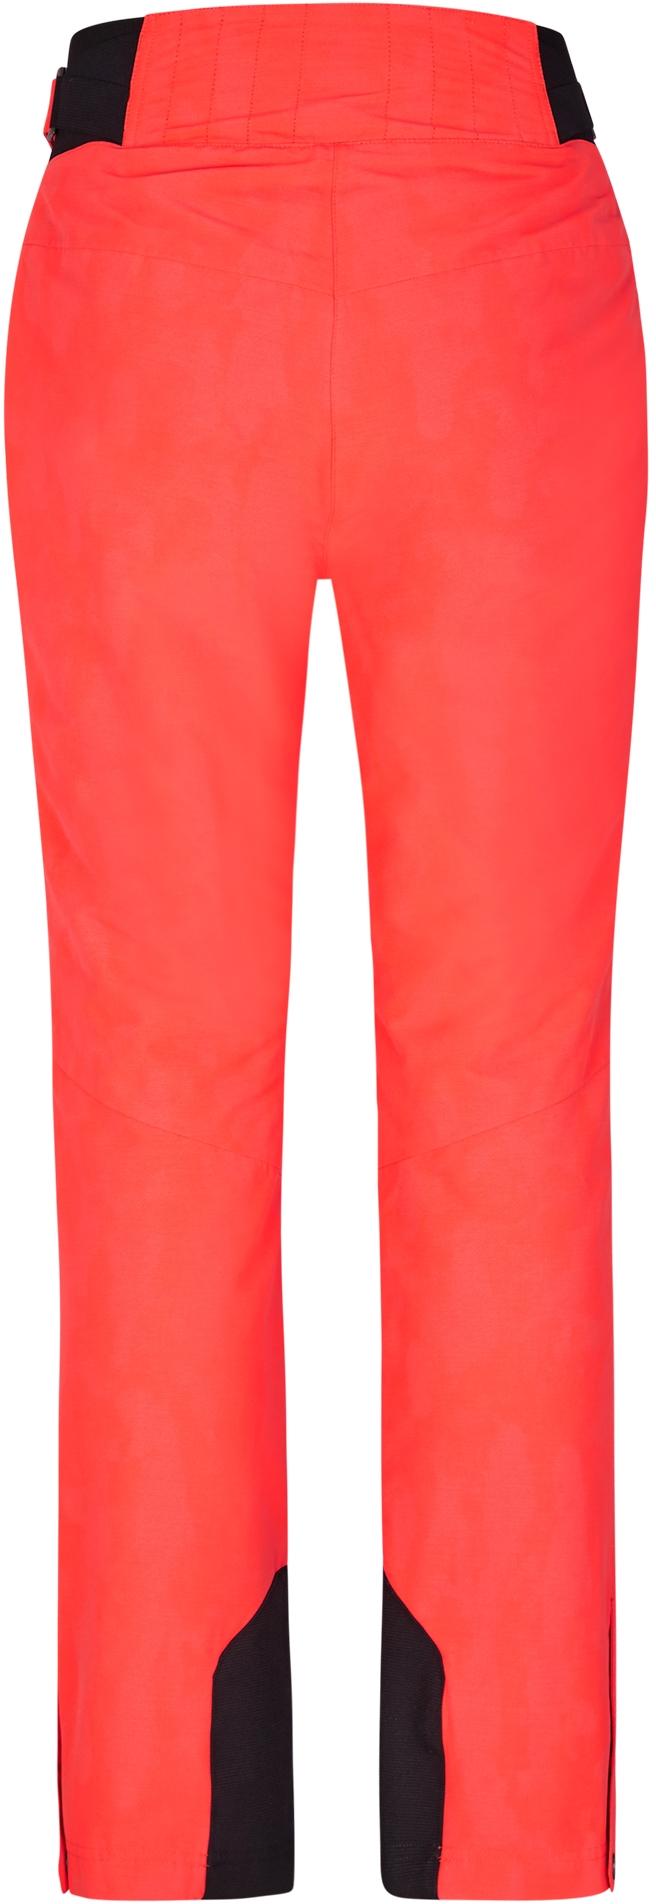 Shop dye TILLA Ziener SportScheck red hot Damen kaufen natural Online Skihose im von